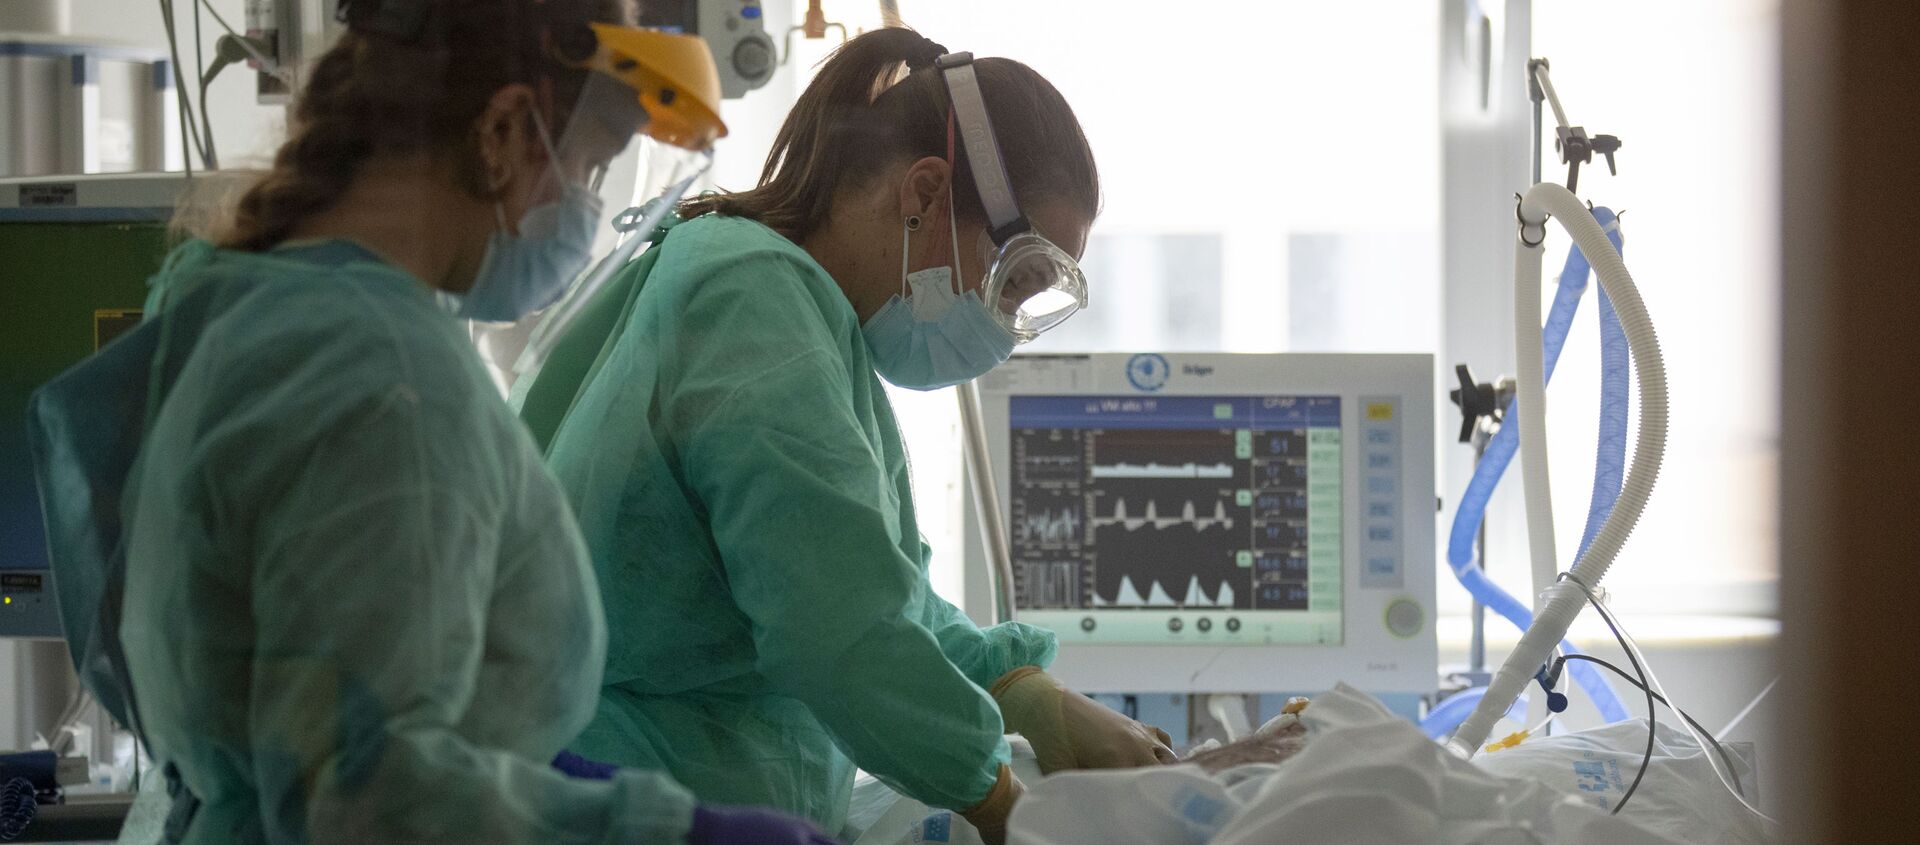 Trabajadores sanitarios asisten a un paciente con COVID-19 en una de las unidades de cuidados intensivos (UCI) del Hospital Universitario de Torrejón - Sputnik Mundo, 1920, 18.01.2021